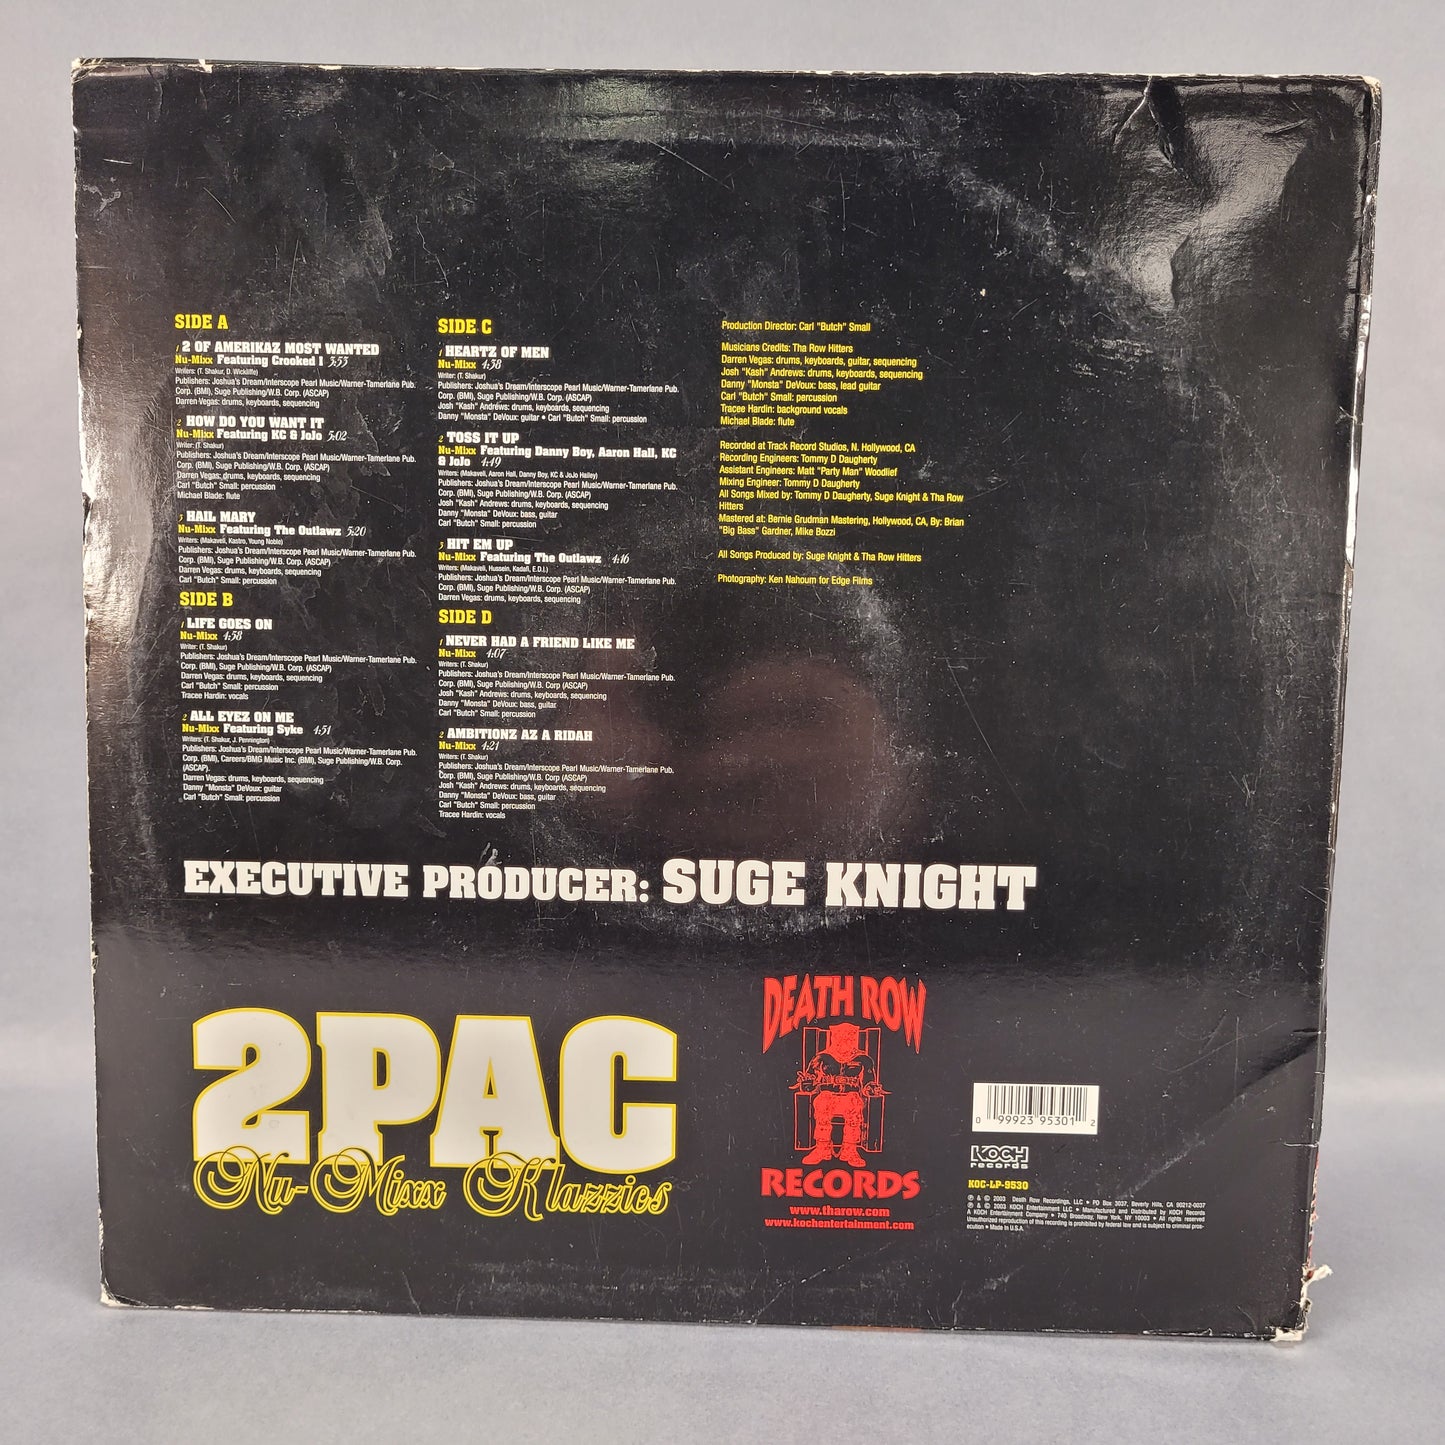 2Pac Nu-Mixx Klazzics Vinyl Record Album 2003 Release